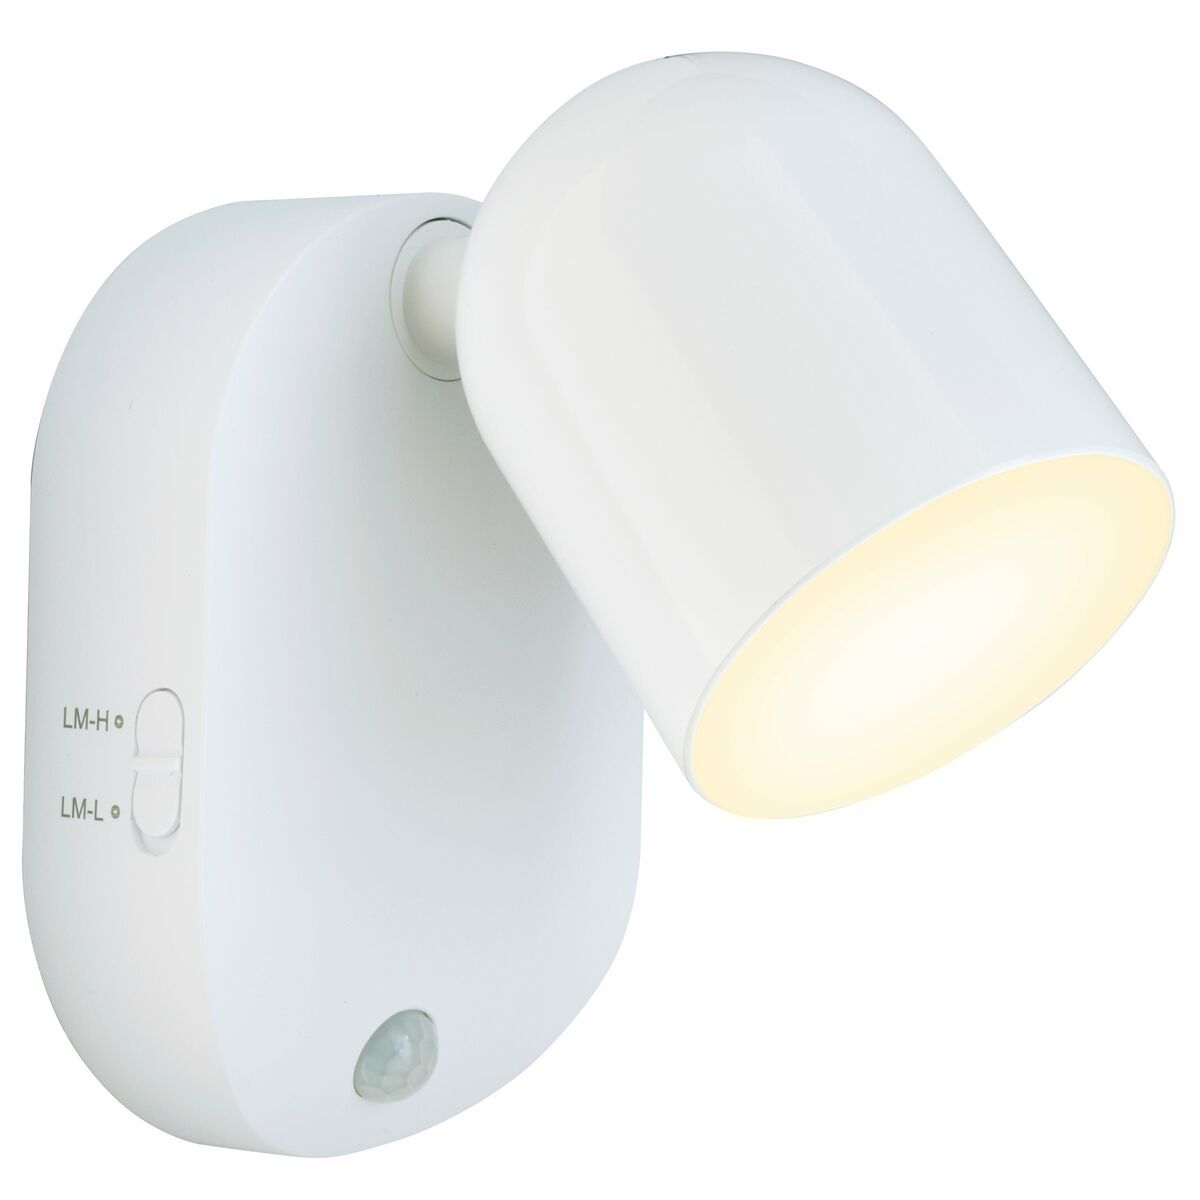 Lampka LED HITIA na baterie 55 lm biała  INSPIRE